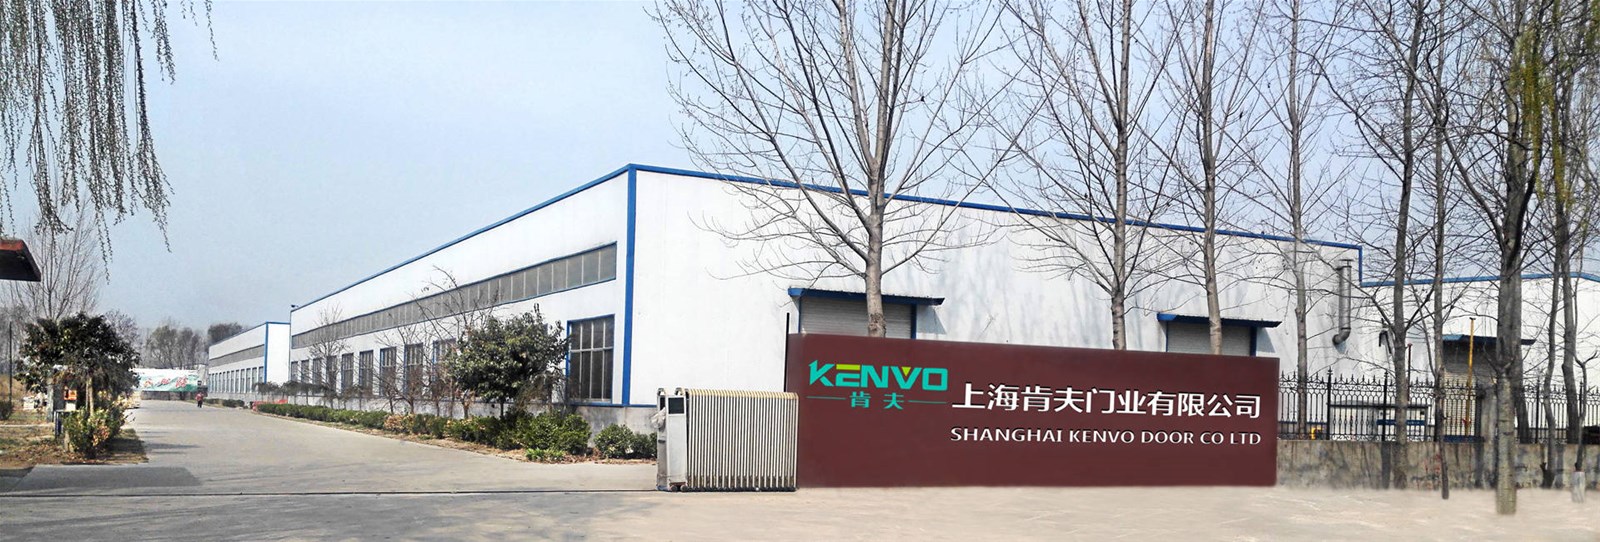 Shanghai Kenvo Door Co., Ltd.